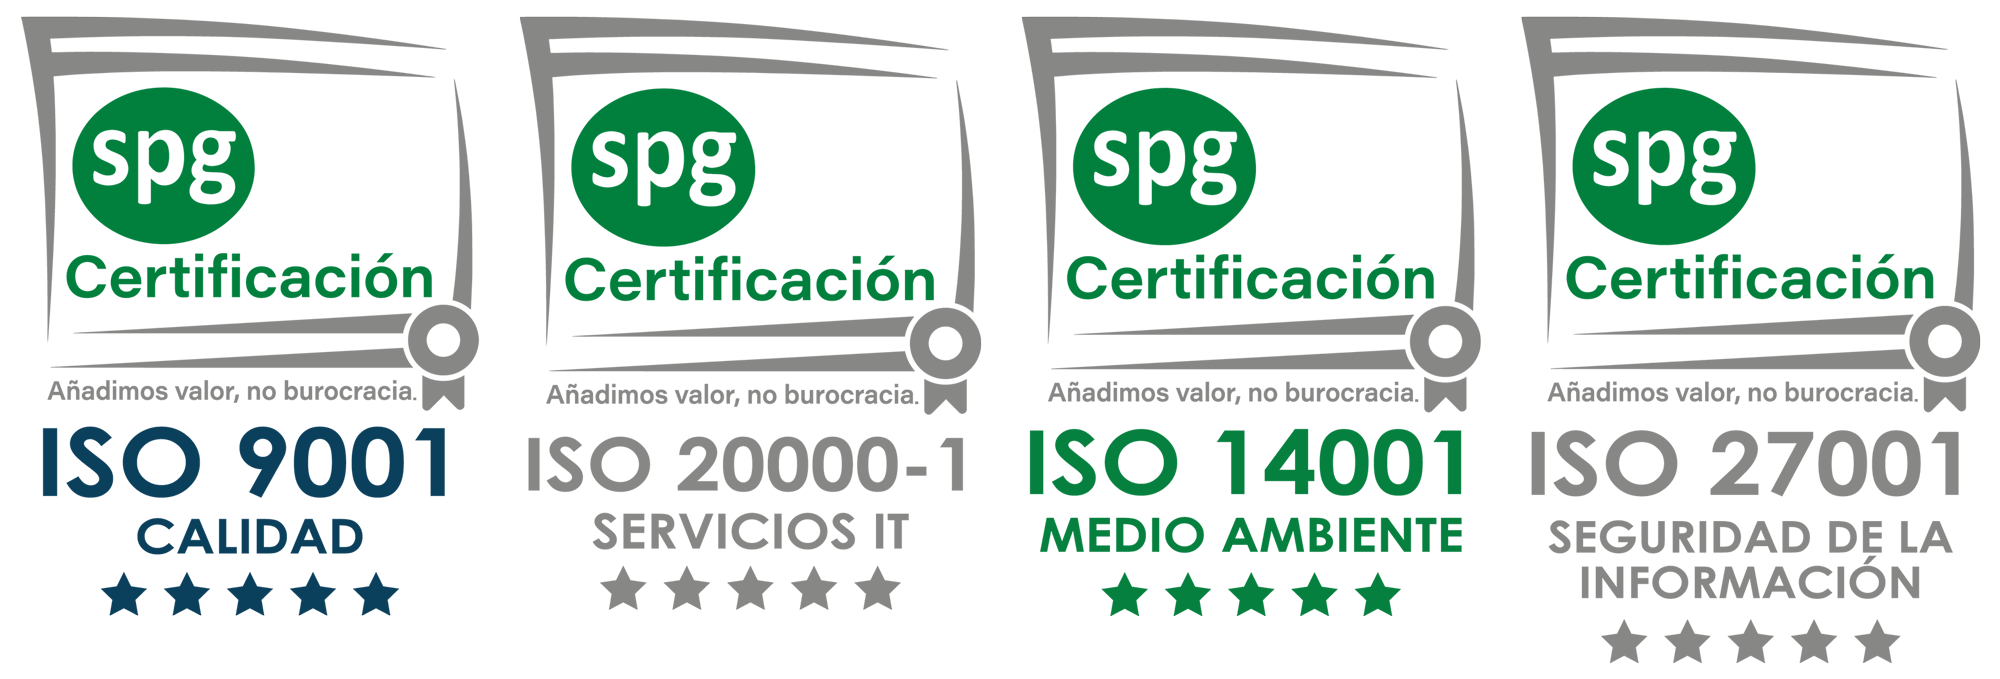 Certificaciones ISO - I3E